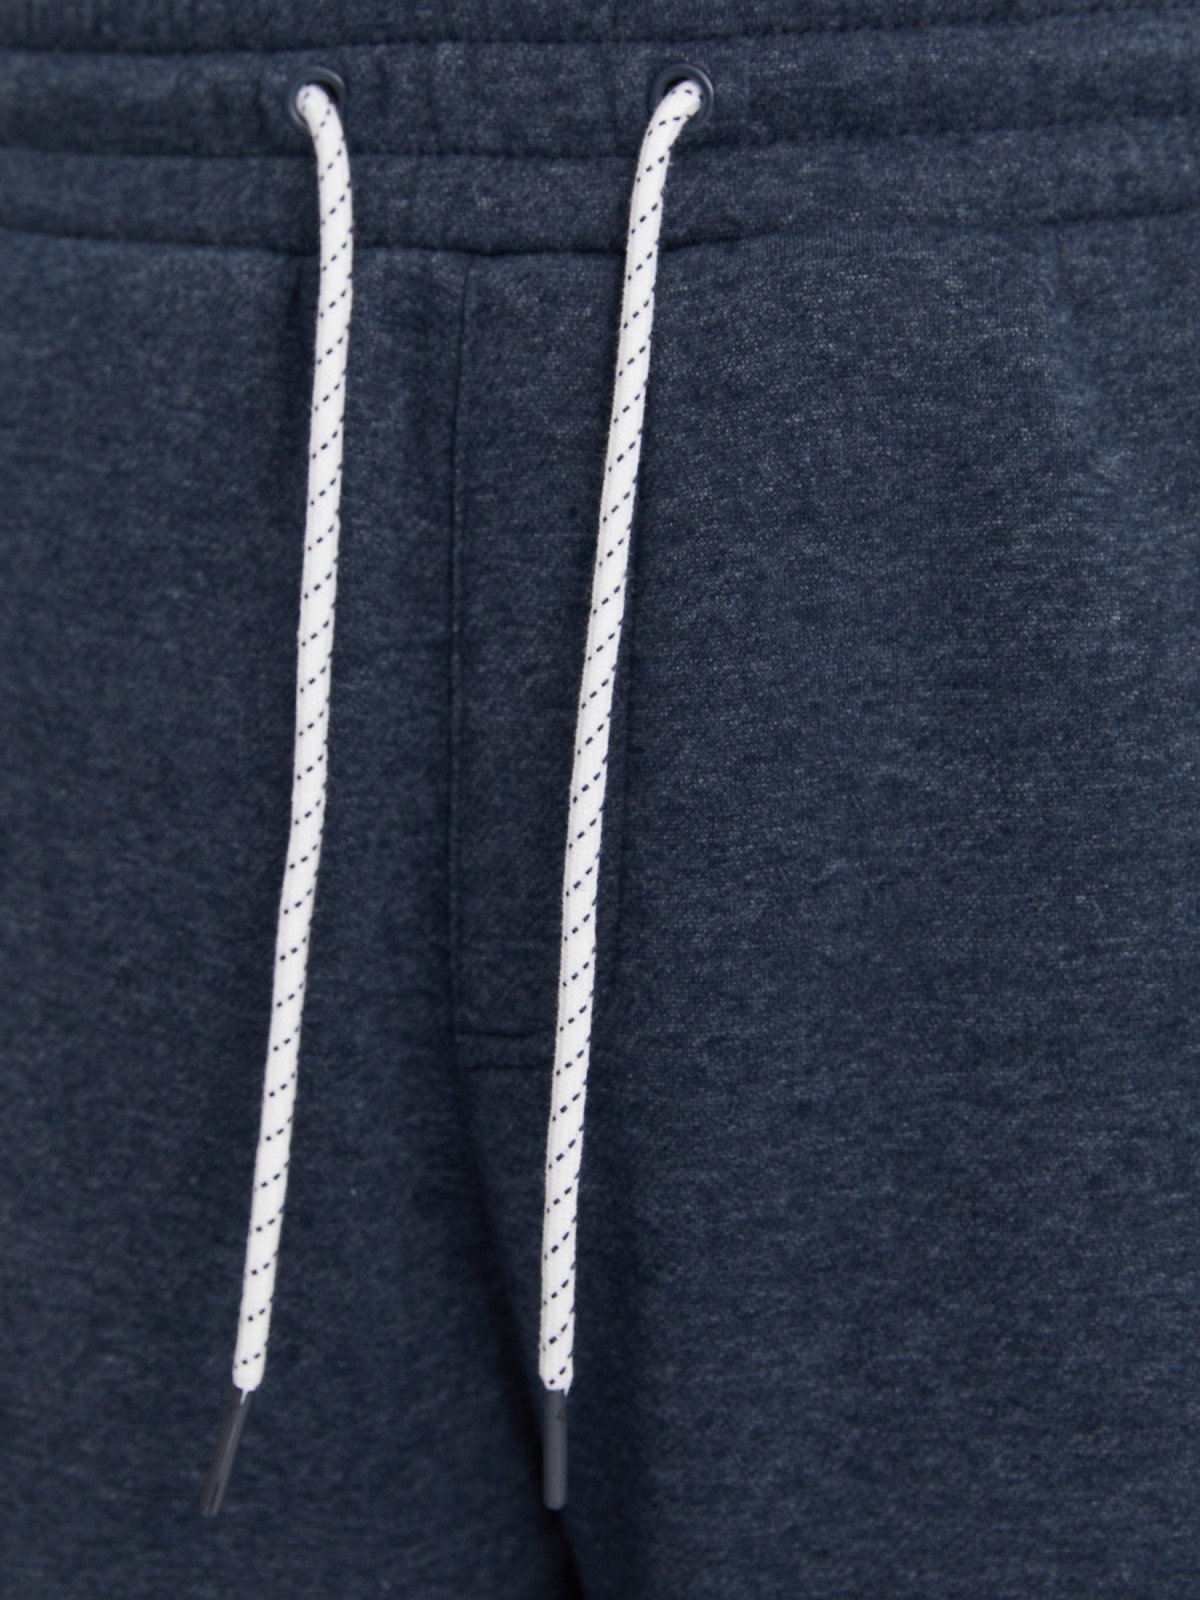 Утеплённые трикотажные брюки-джоггеры в спортивном стиле с лампасами zolla 213337660013, цвет голубой, размер L - фото 4